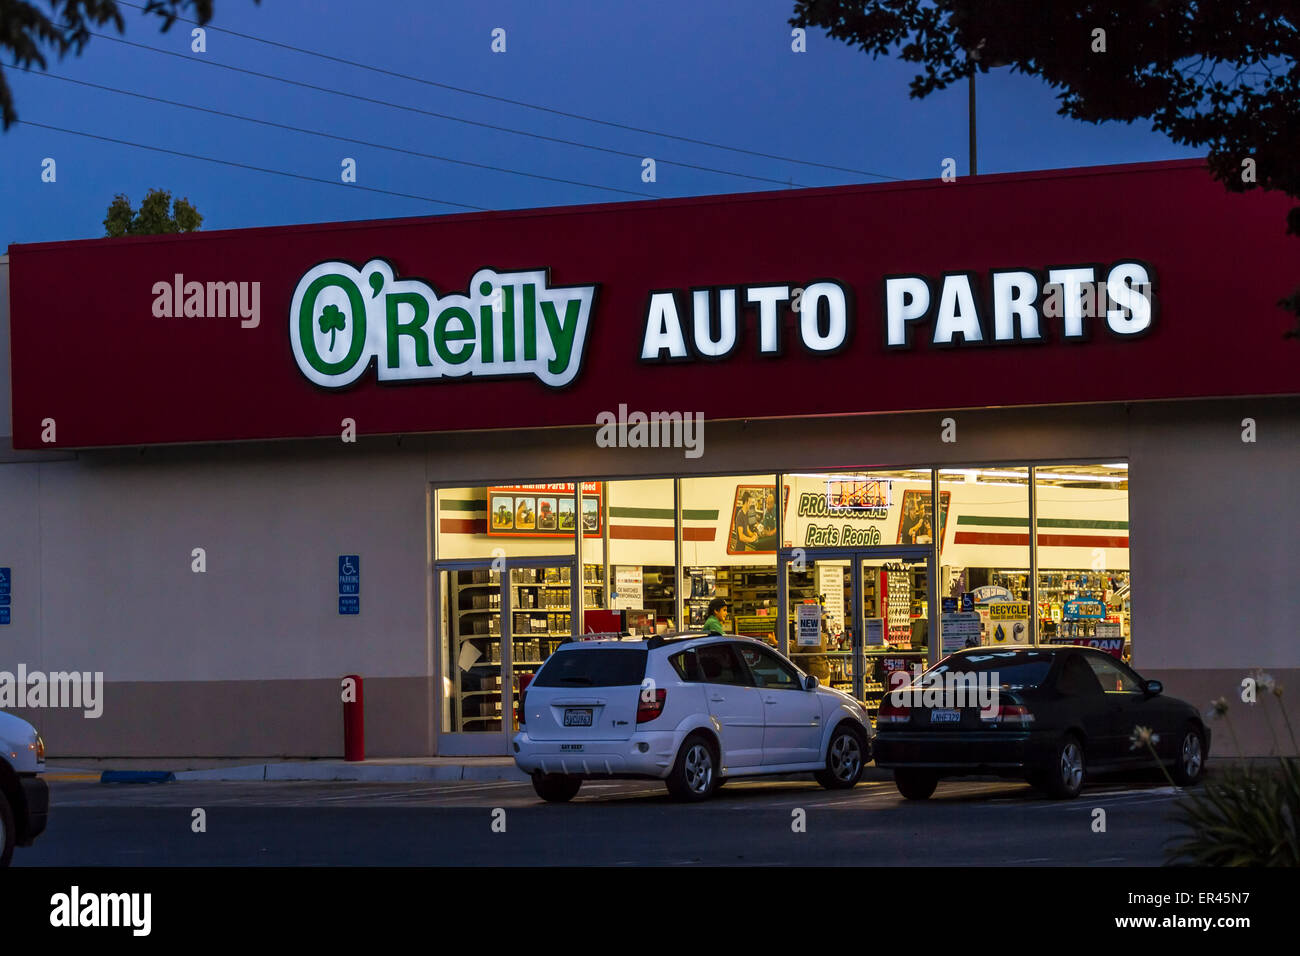 Oreillys Auto Parts Stores Near Me Hot Sale